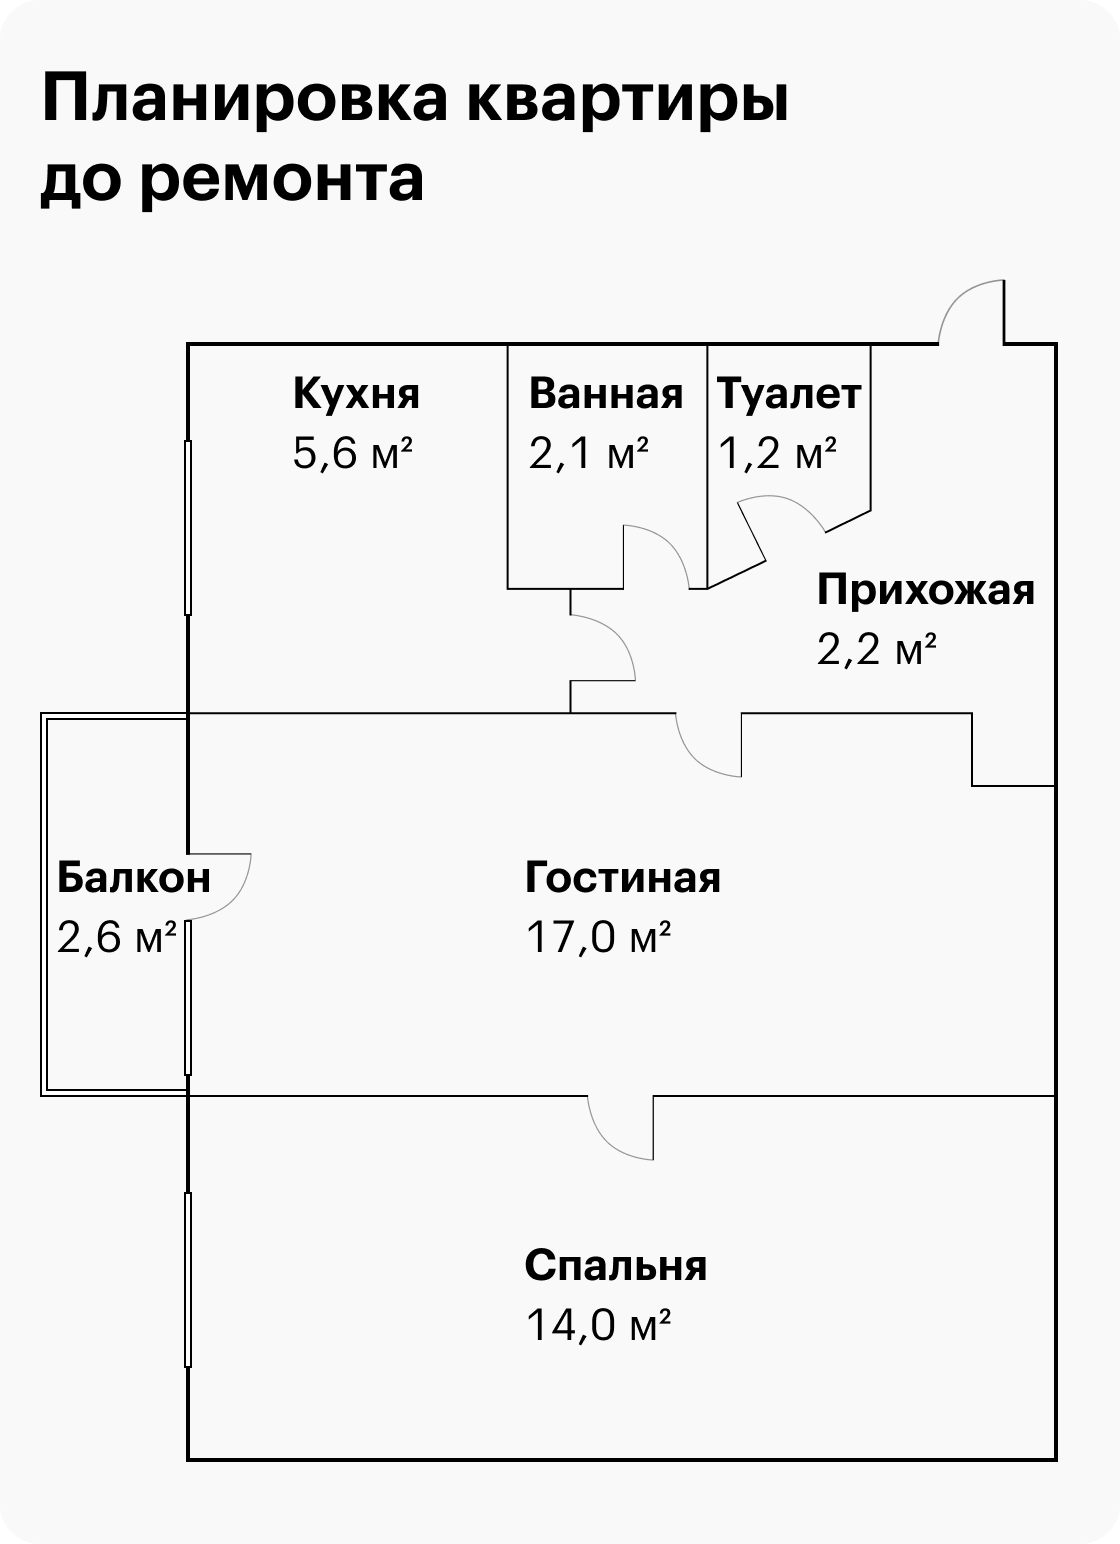 Планировка квартиры типичная для хрущевок: здесь маленькие комнаты по 17 и 14 м², а площадь кухни всего 5,6 м². Высота потолков — 2,5 м